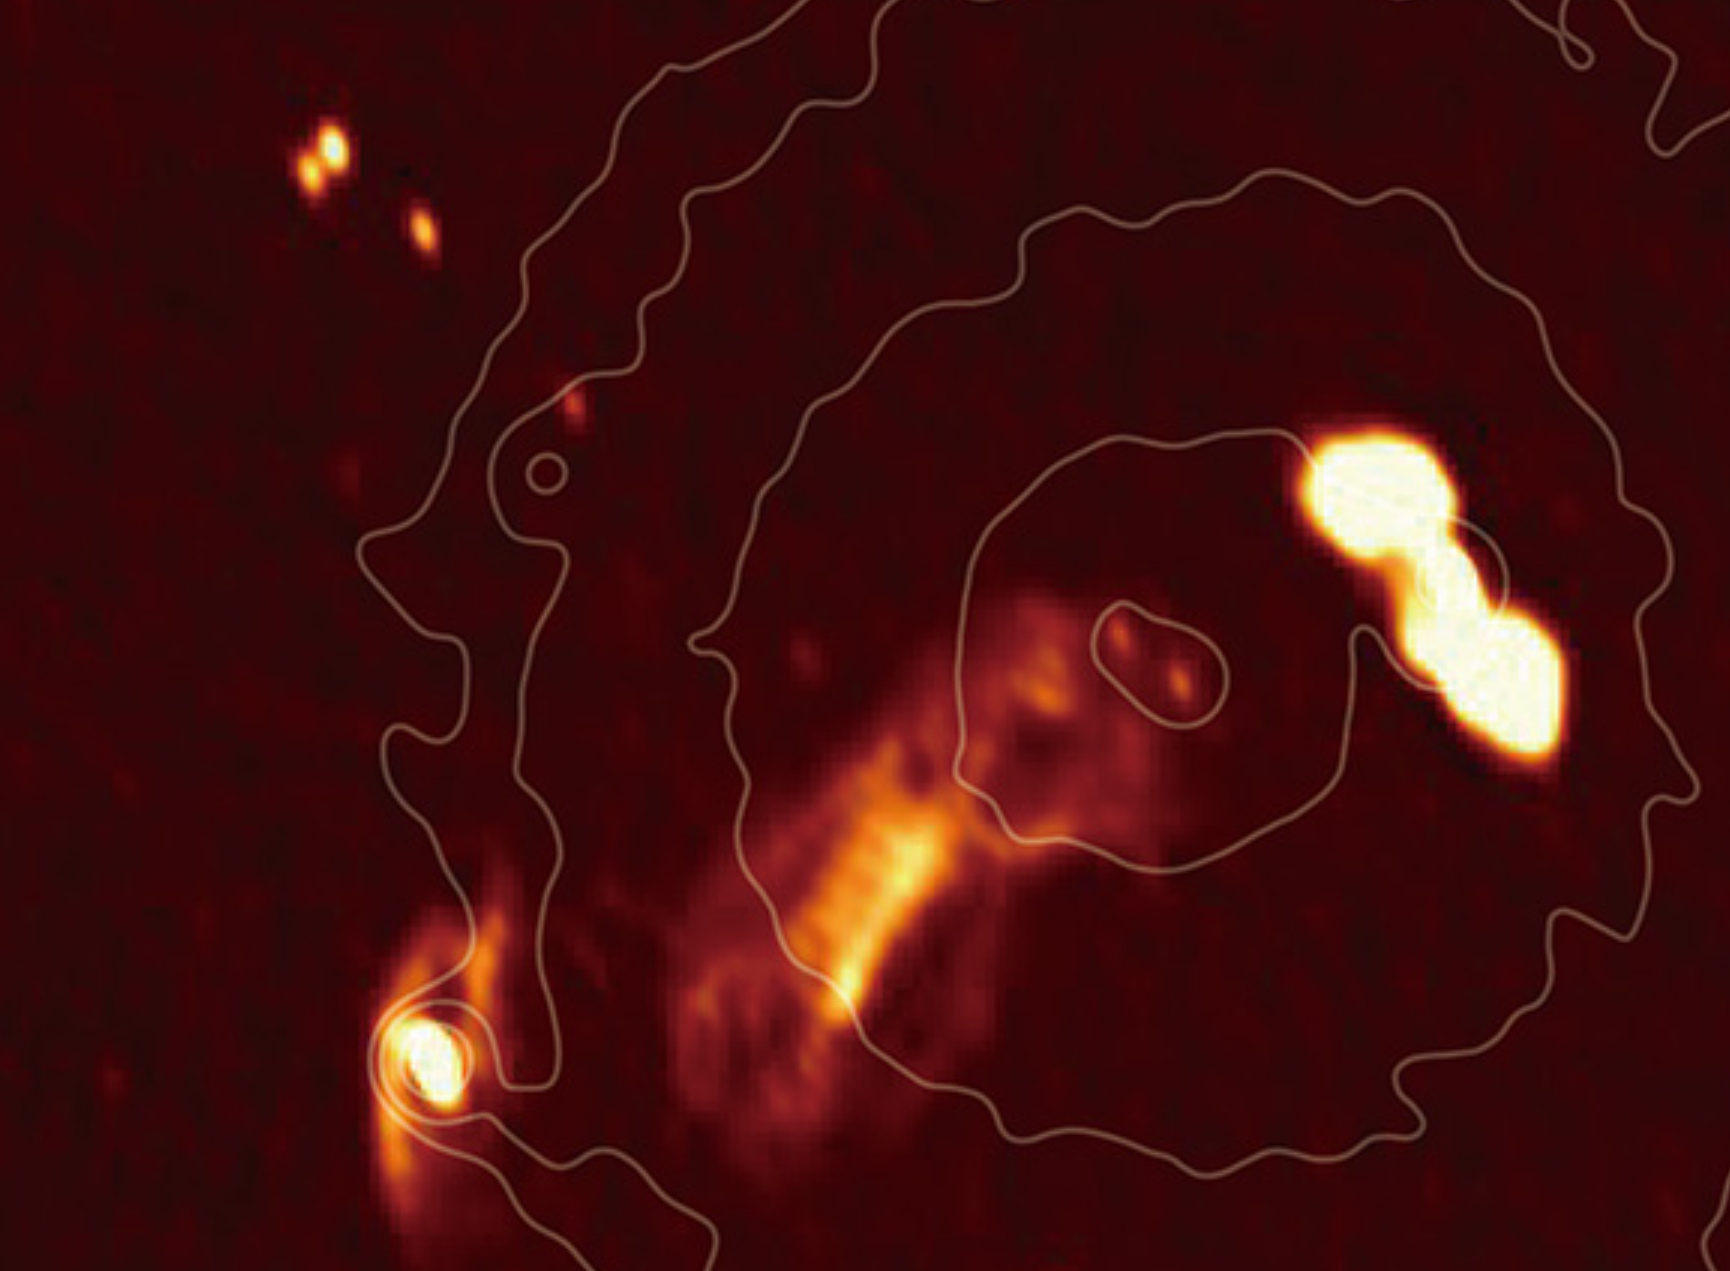 GMRT radio fotografija središnje regije skupa galaksija Hydra. Zasluge: Kohei Kurahara.